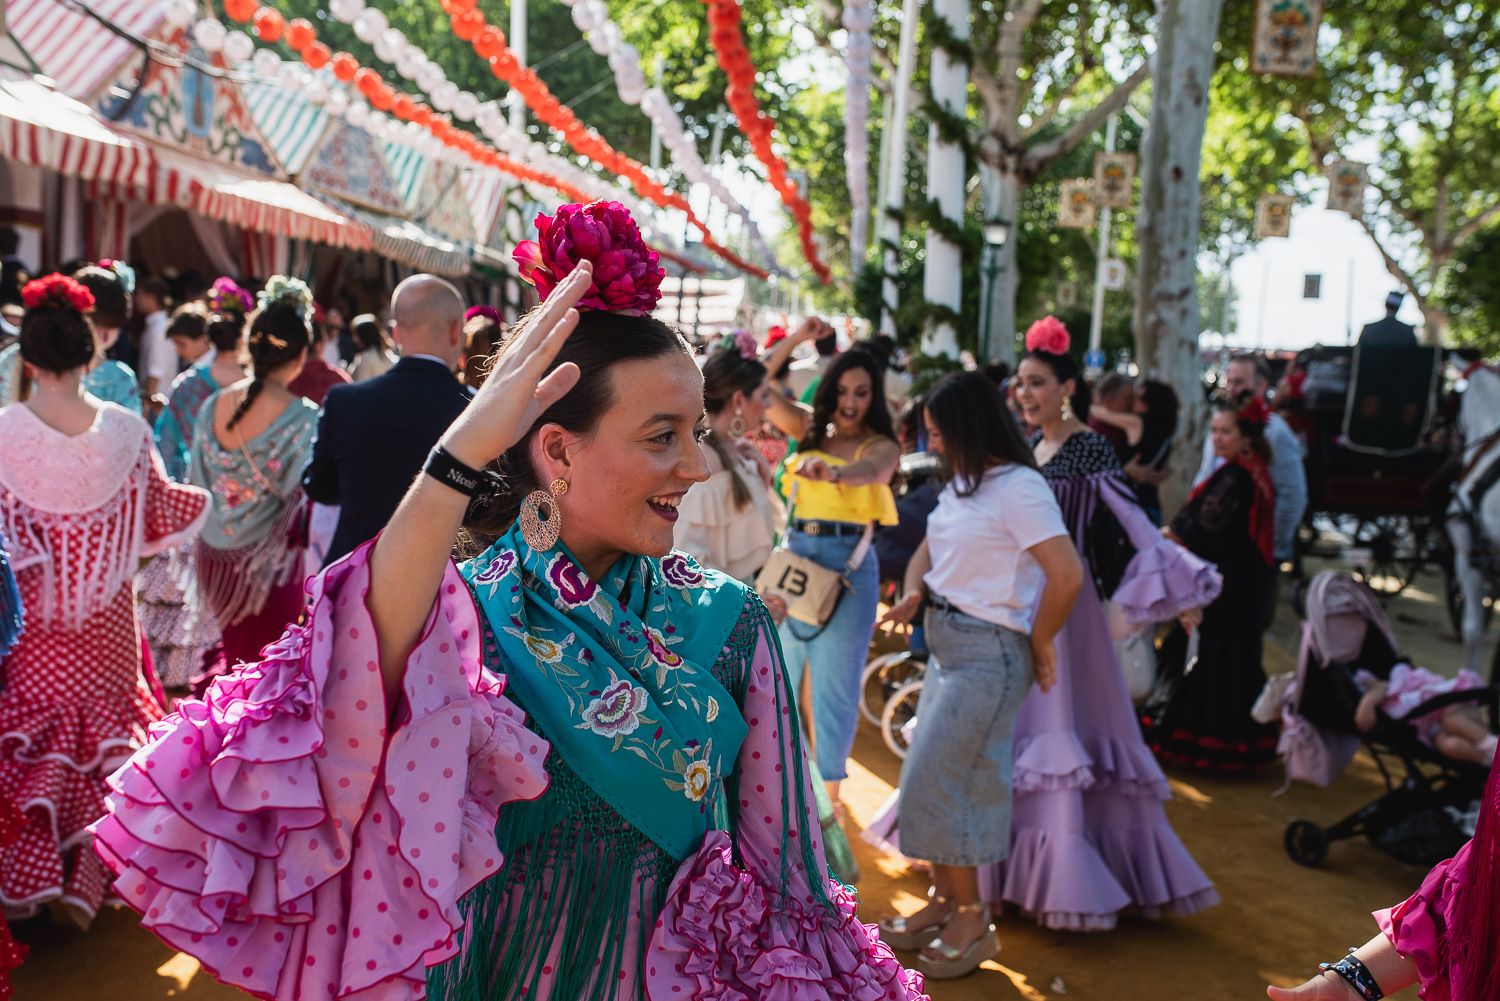 El domingo de la Feria de Sevilla, en imágenes.